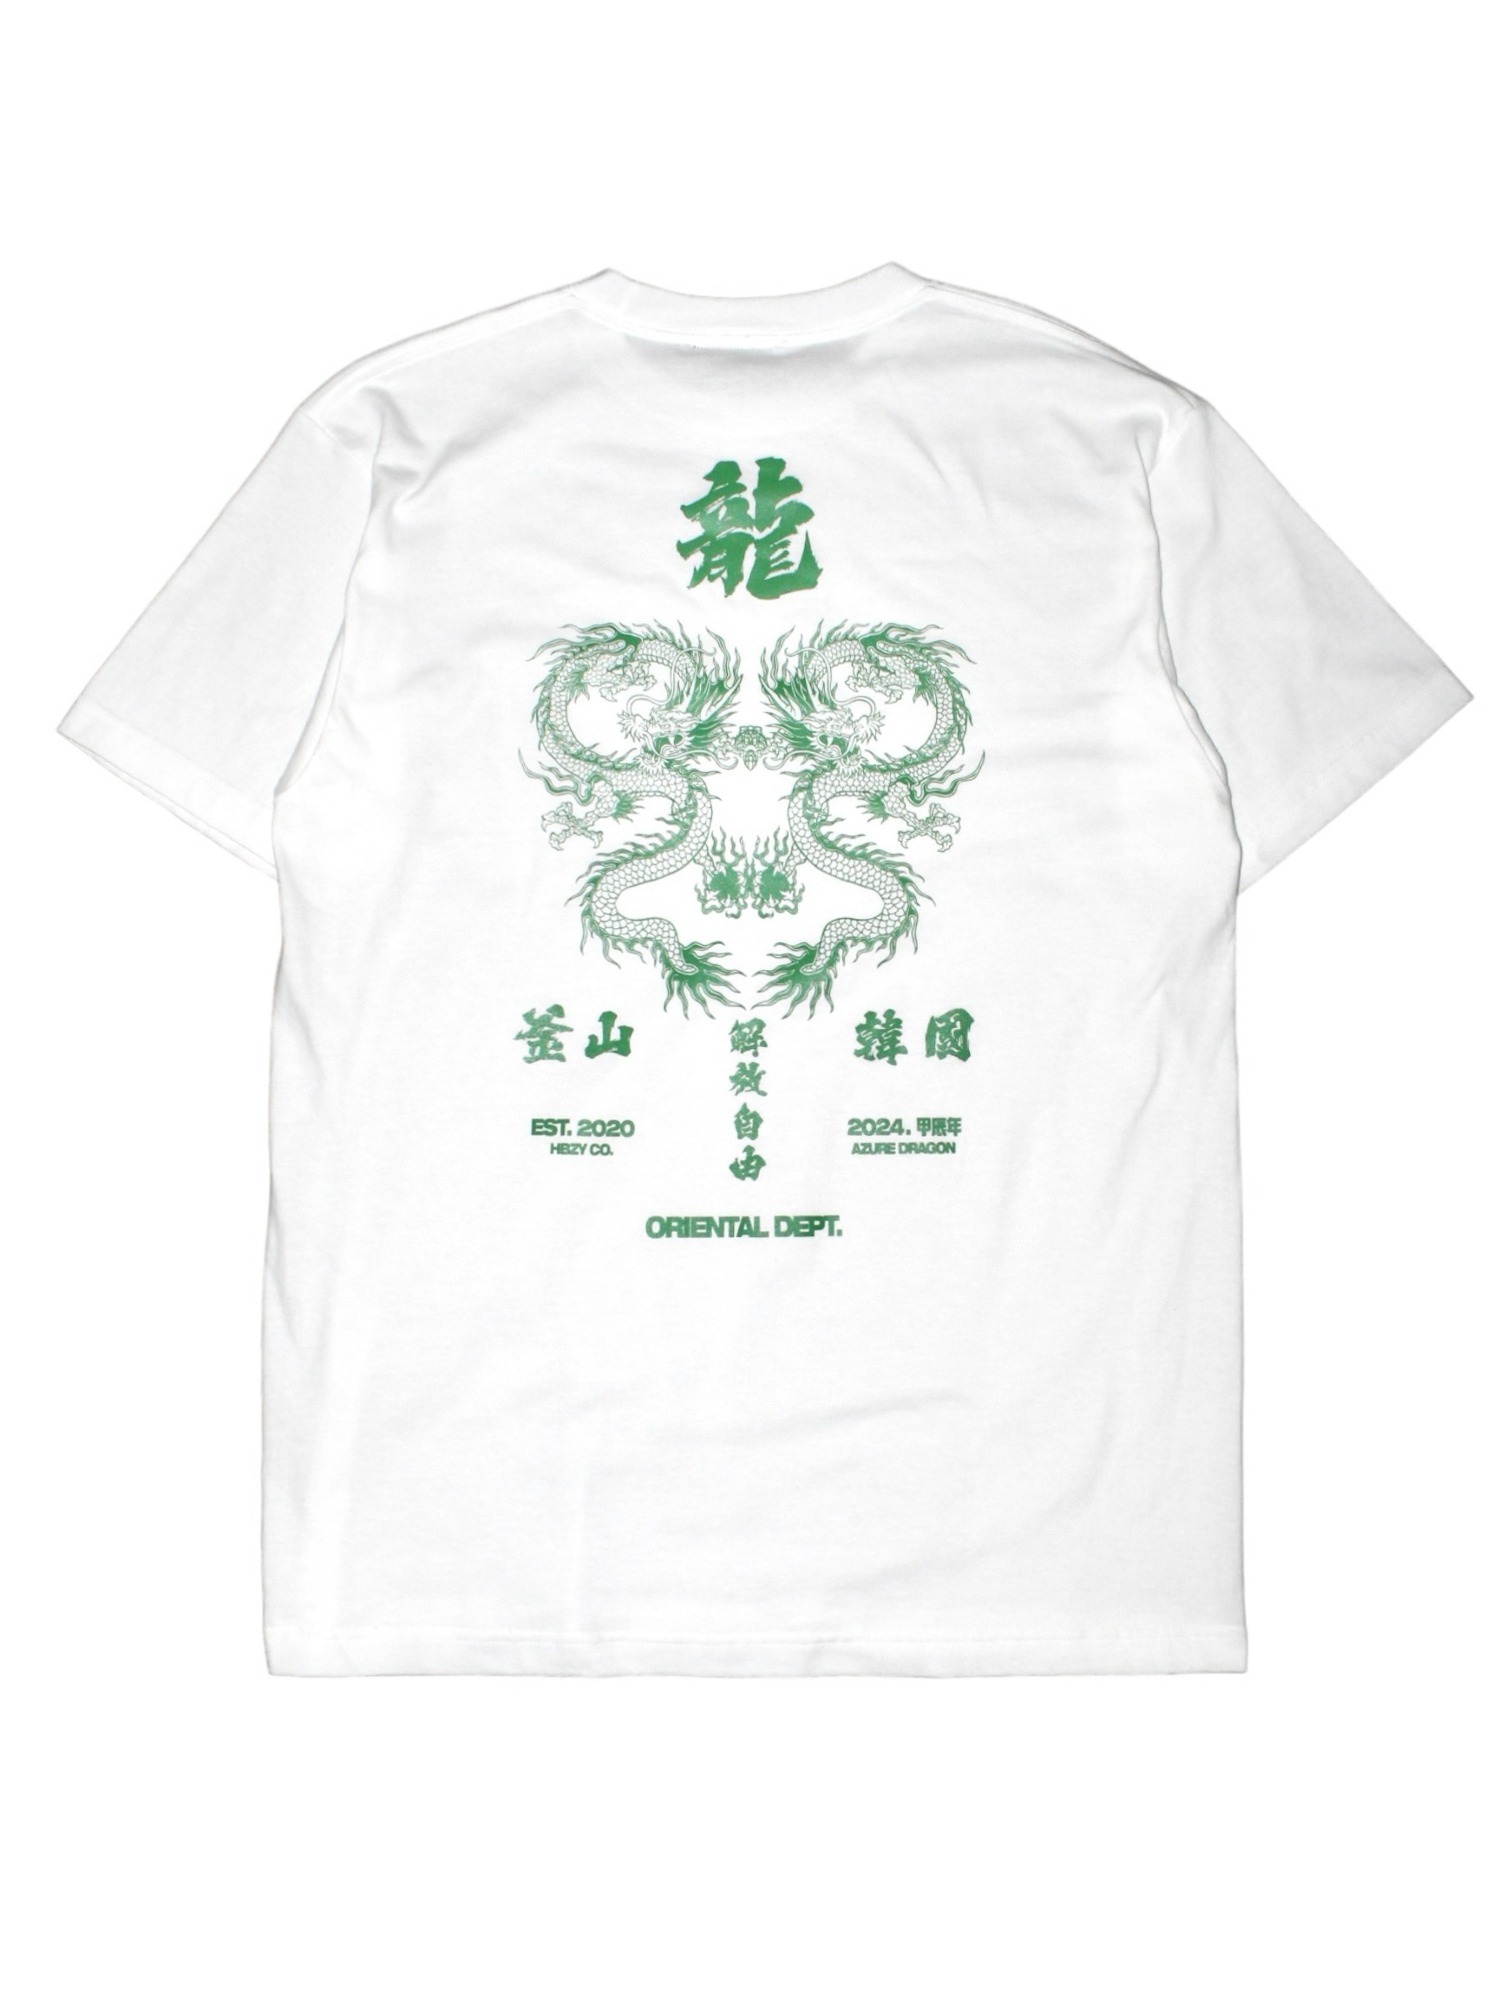 解放自由 釜山 청룡「靑龍」 Azure Dragon 1/2 T-Shirts White/Green